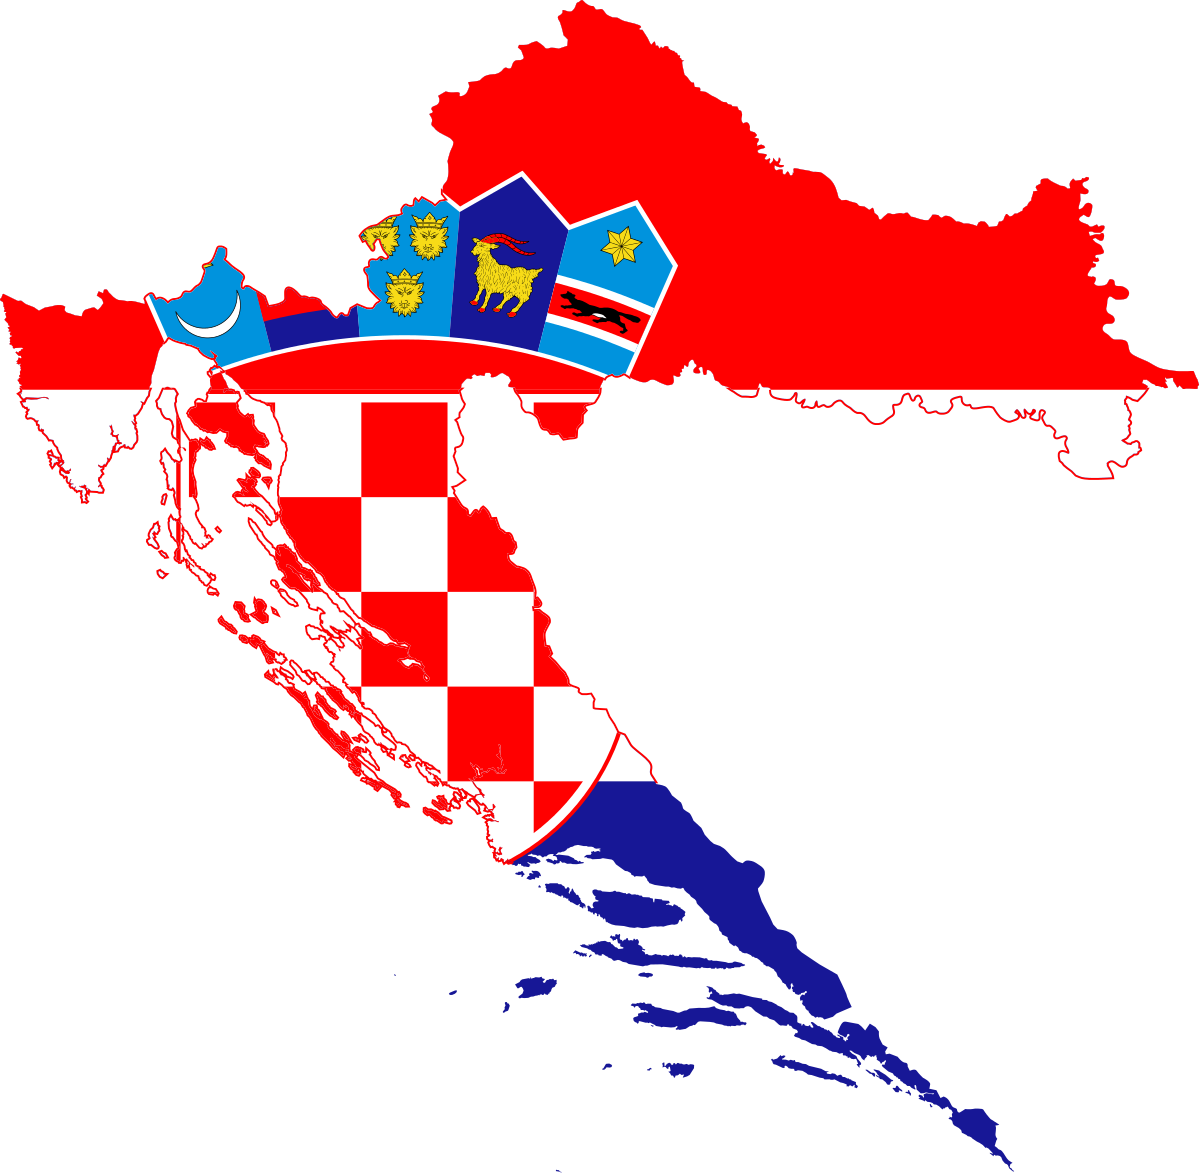 Entrega De Paquete A Croacia